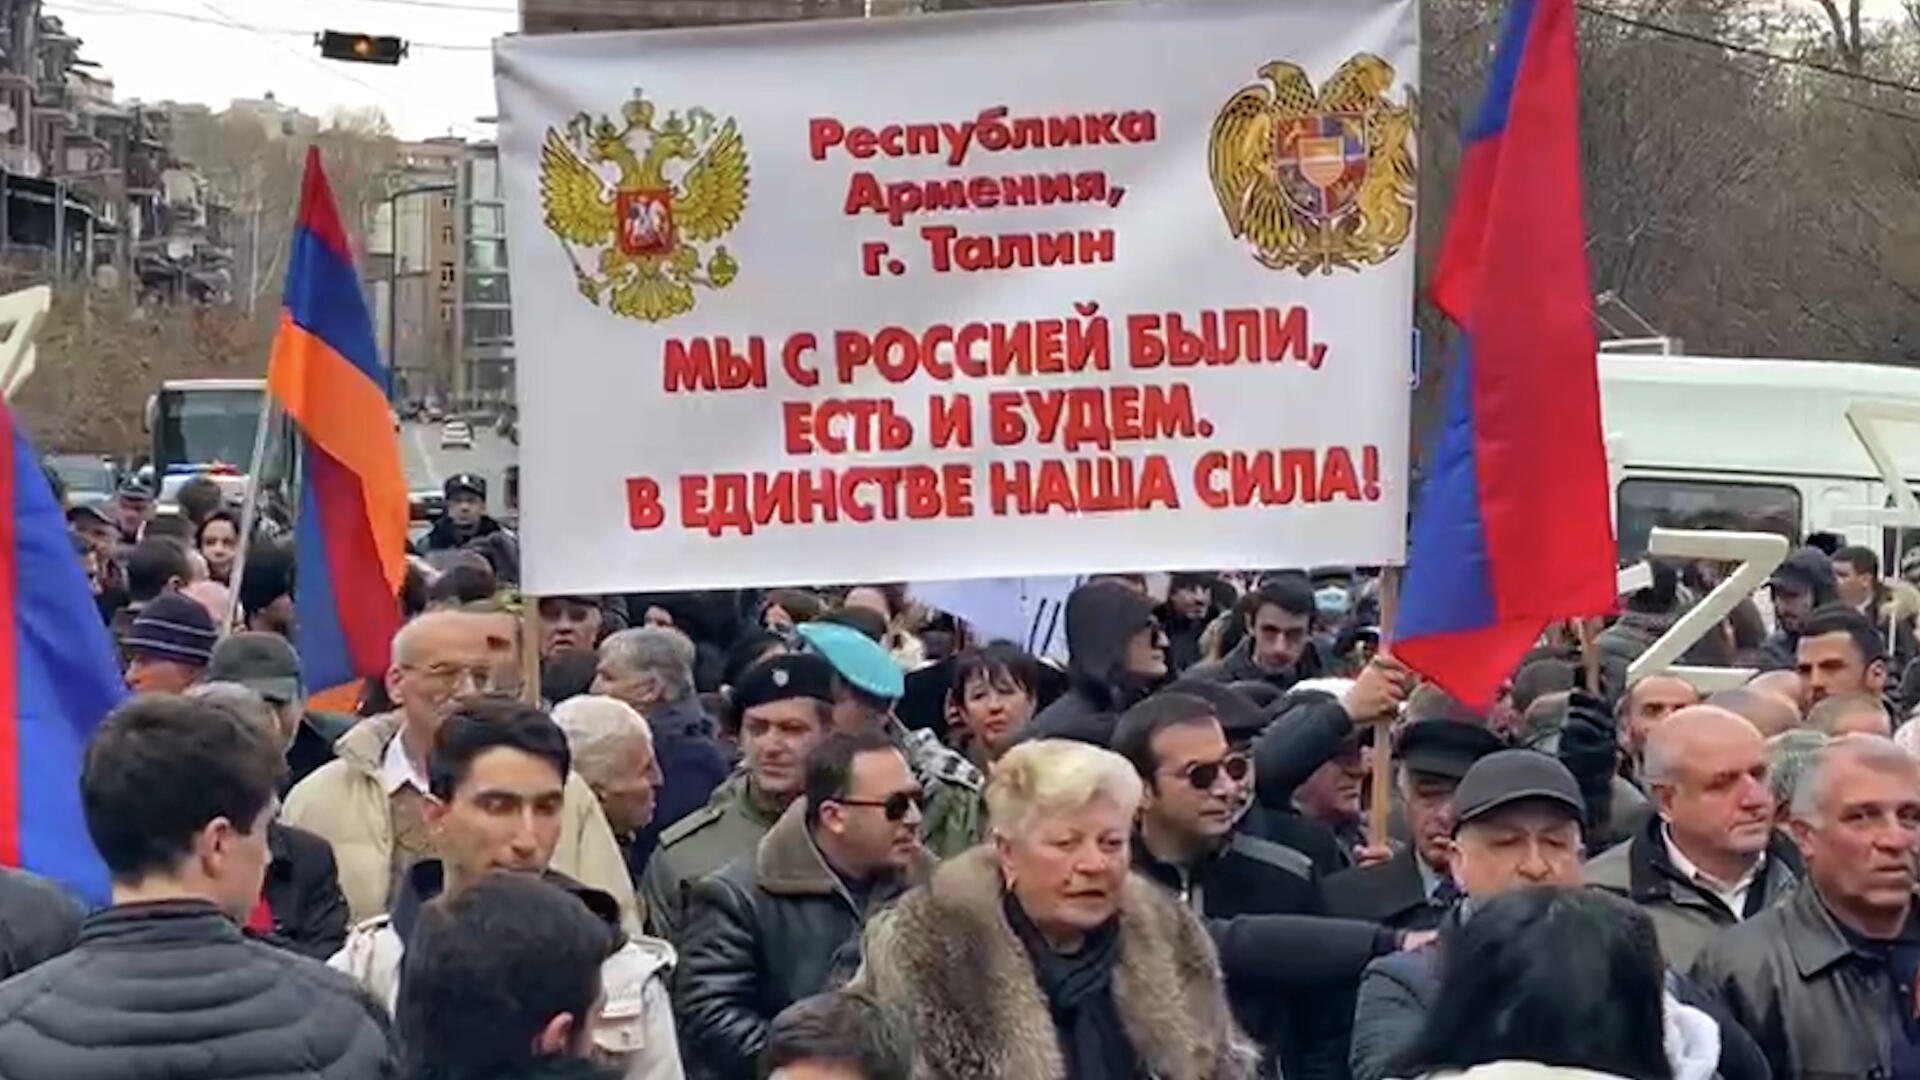 Шествие Z – многолюдная акция состоялась у посольства России в Ереване